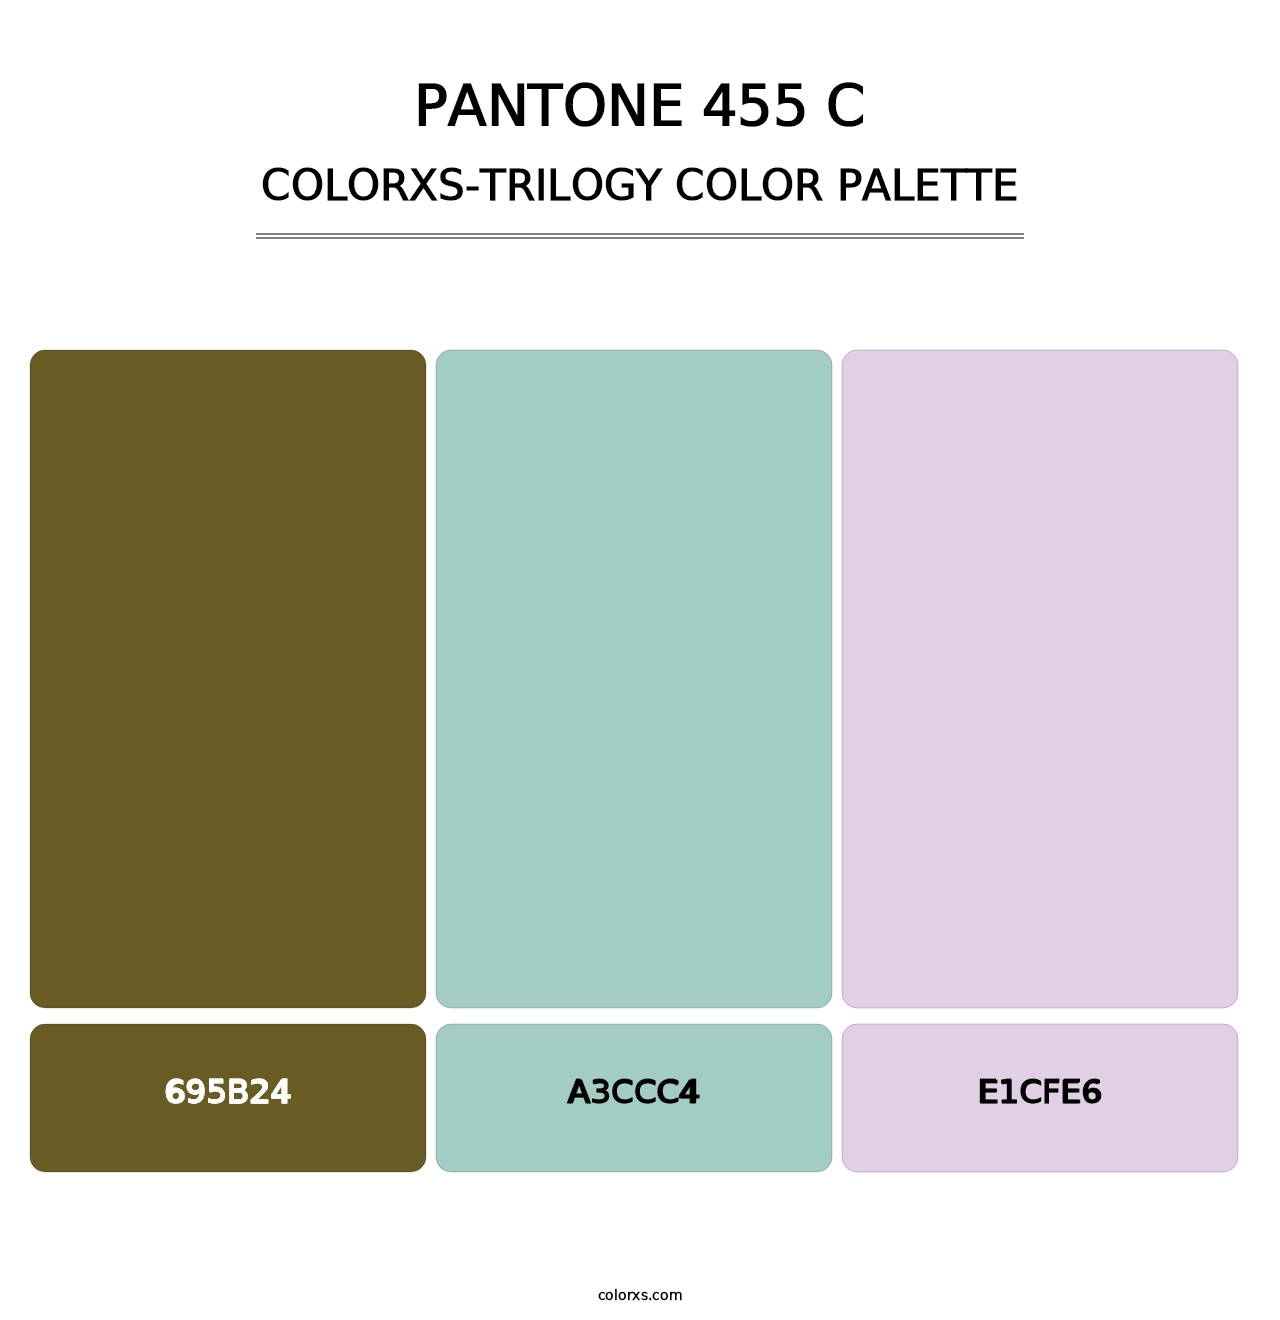 PANTONE 455 C - Colorxs Trilogy Palette